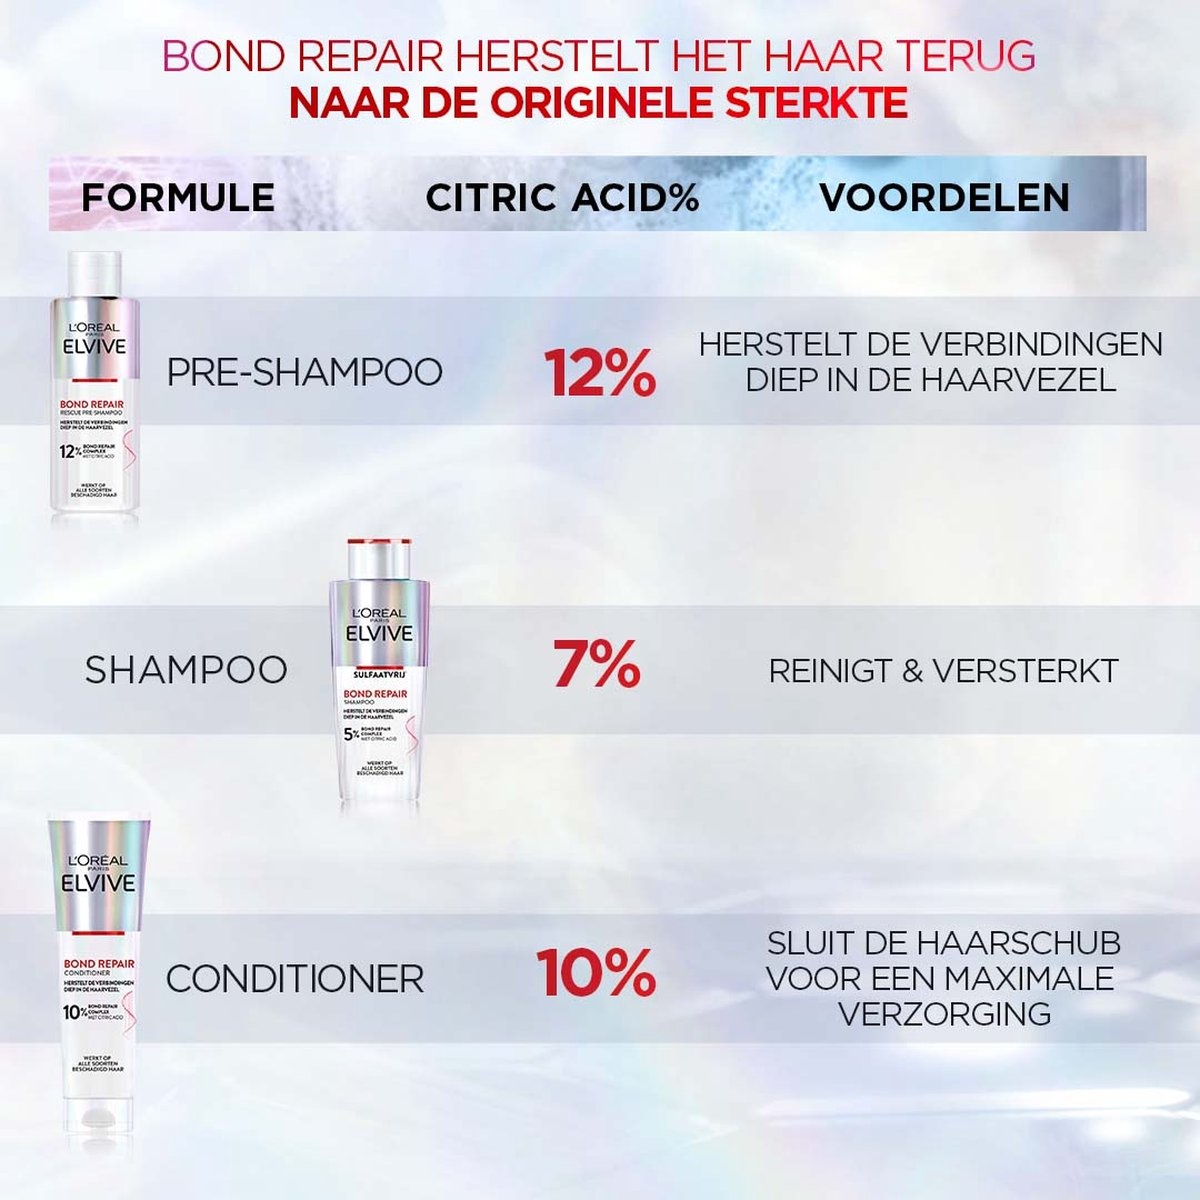 L'Oréal Paris Elvive Bond Repair Pre-Shampoo - 200ml